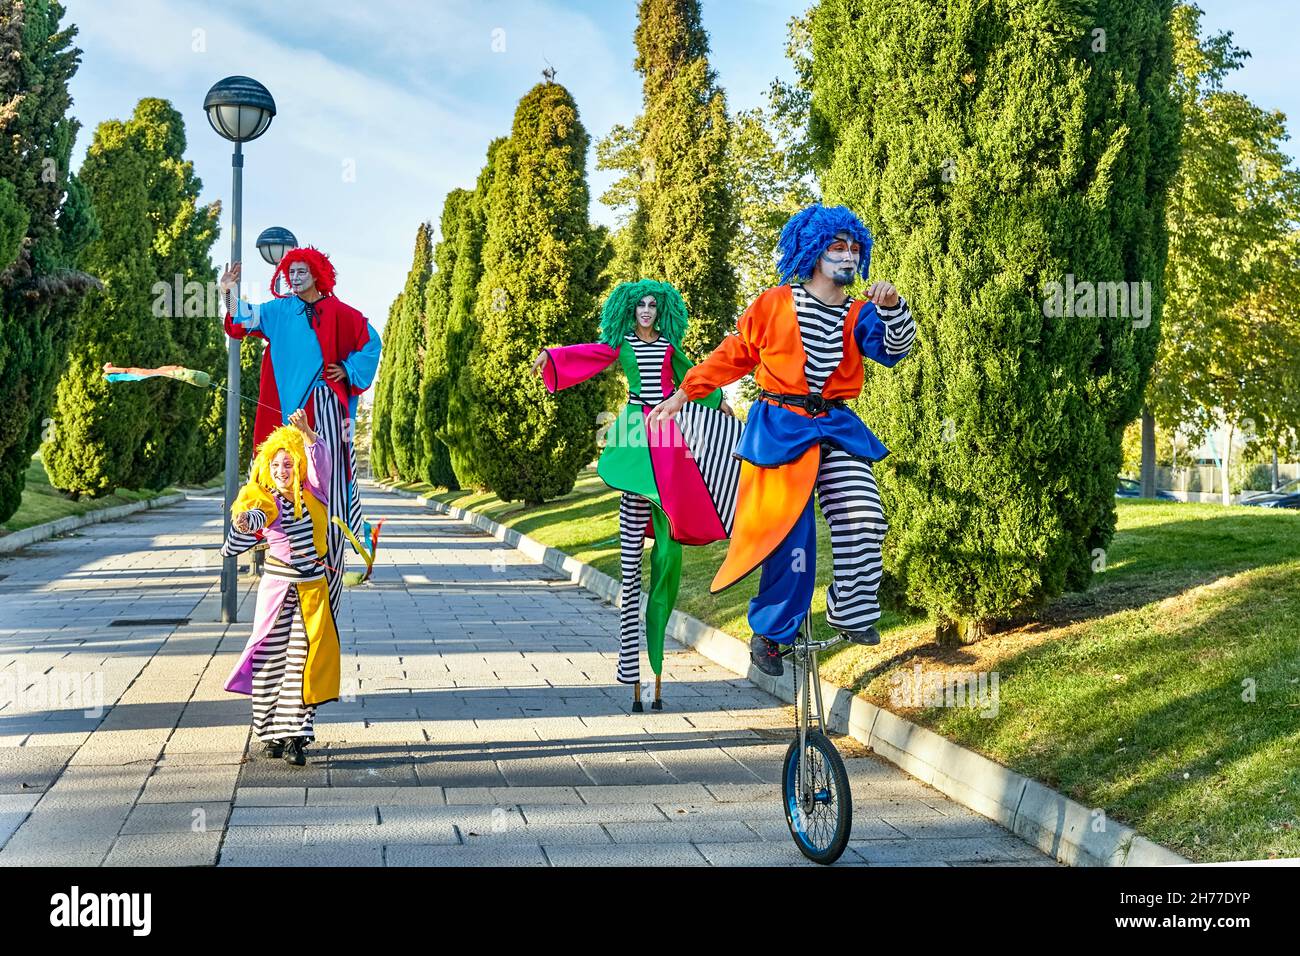 Ganzkörper-Truppe mit lustigen, kreativen Künstlern in bunten Harlekinen-Kostümen und Perücken, die an sonnigen Tagen im Park auf Stelzen spazieren und mit einem Einrad fahren Stockfoto